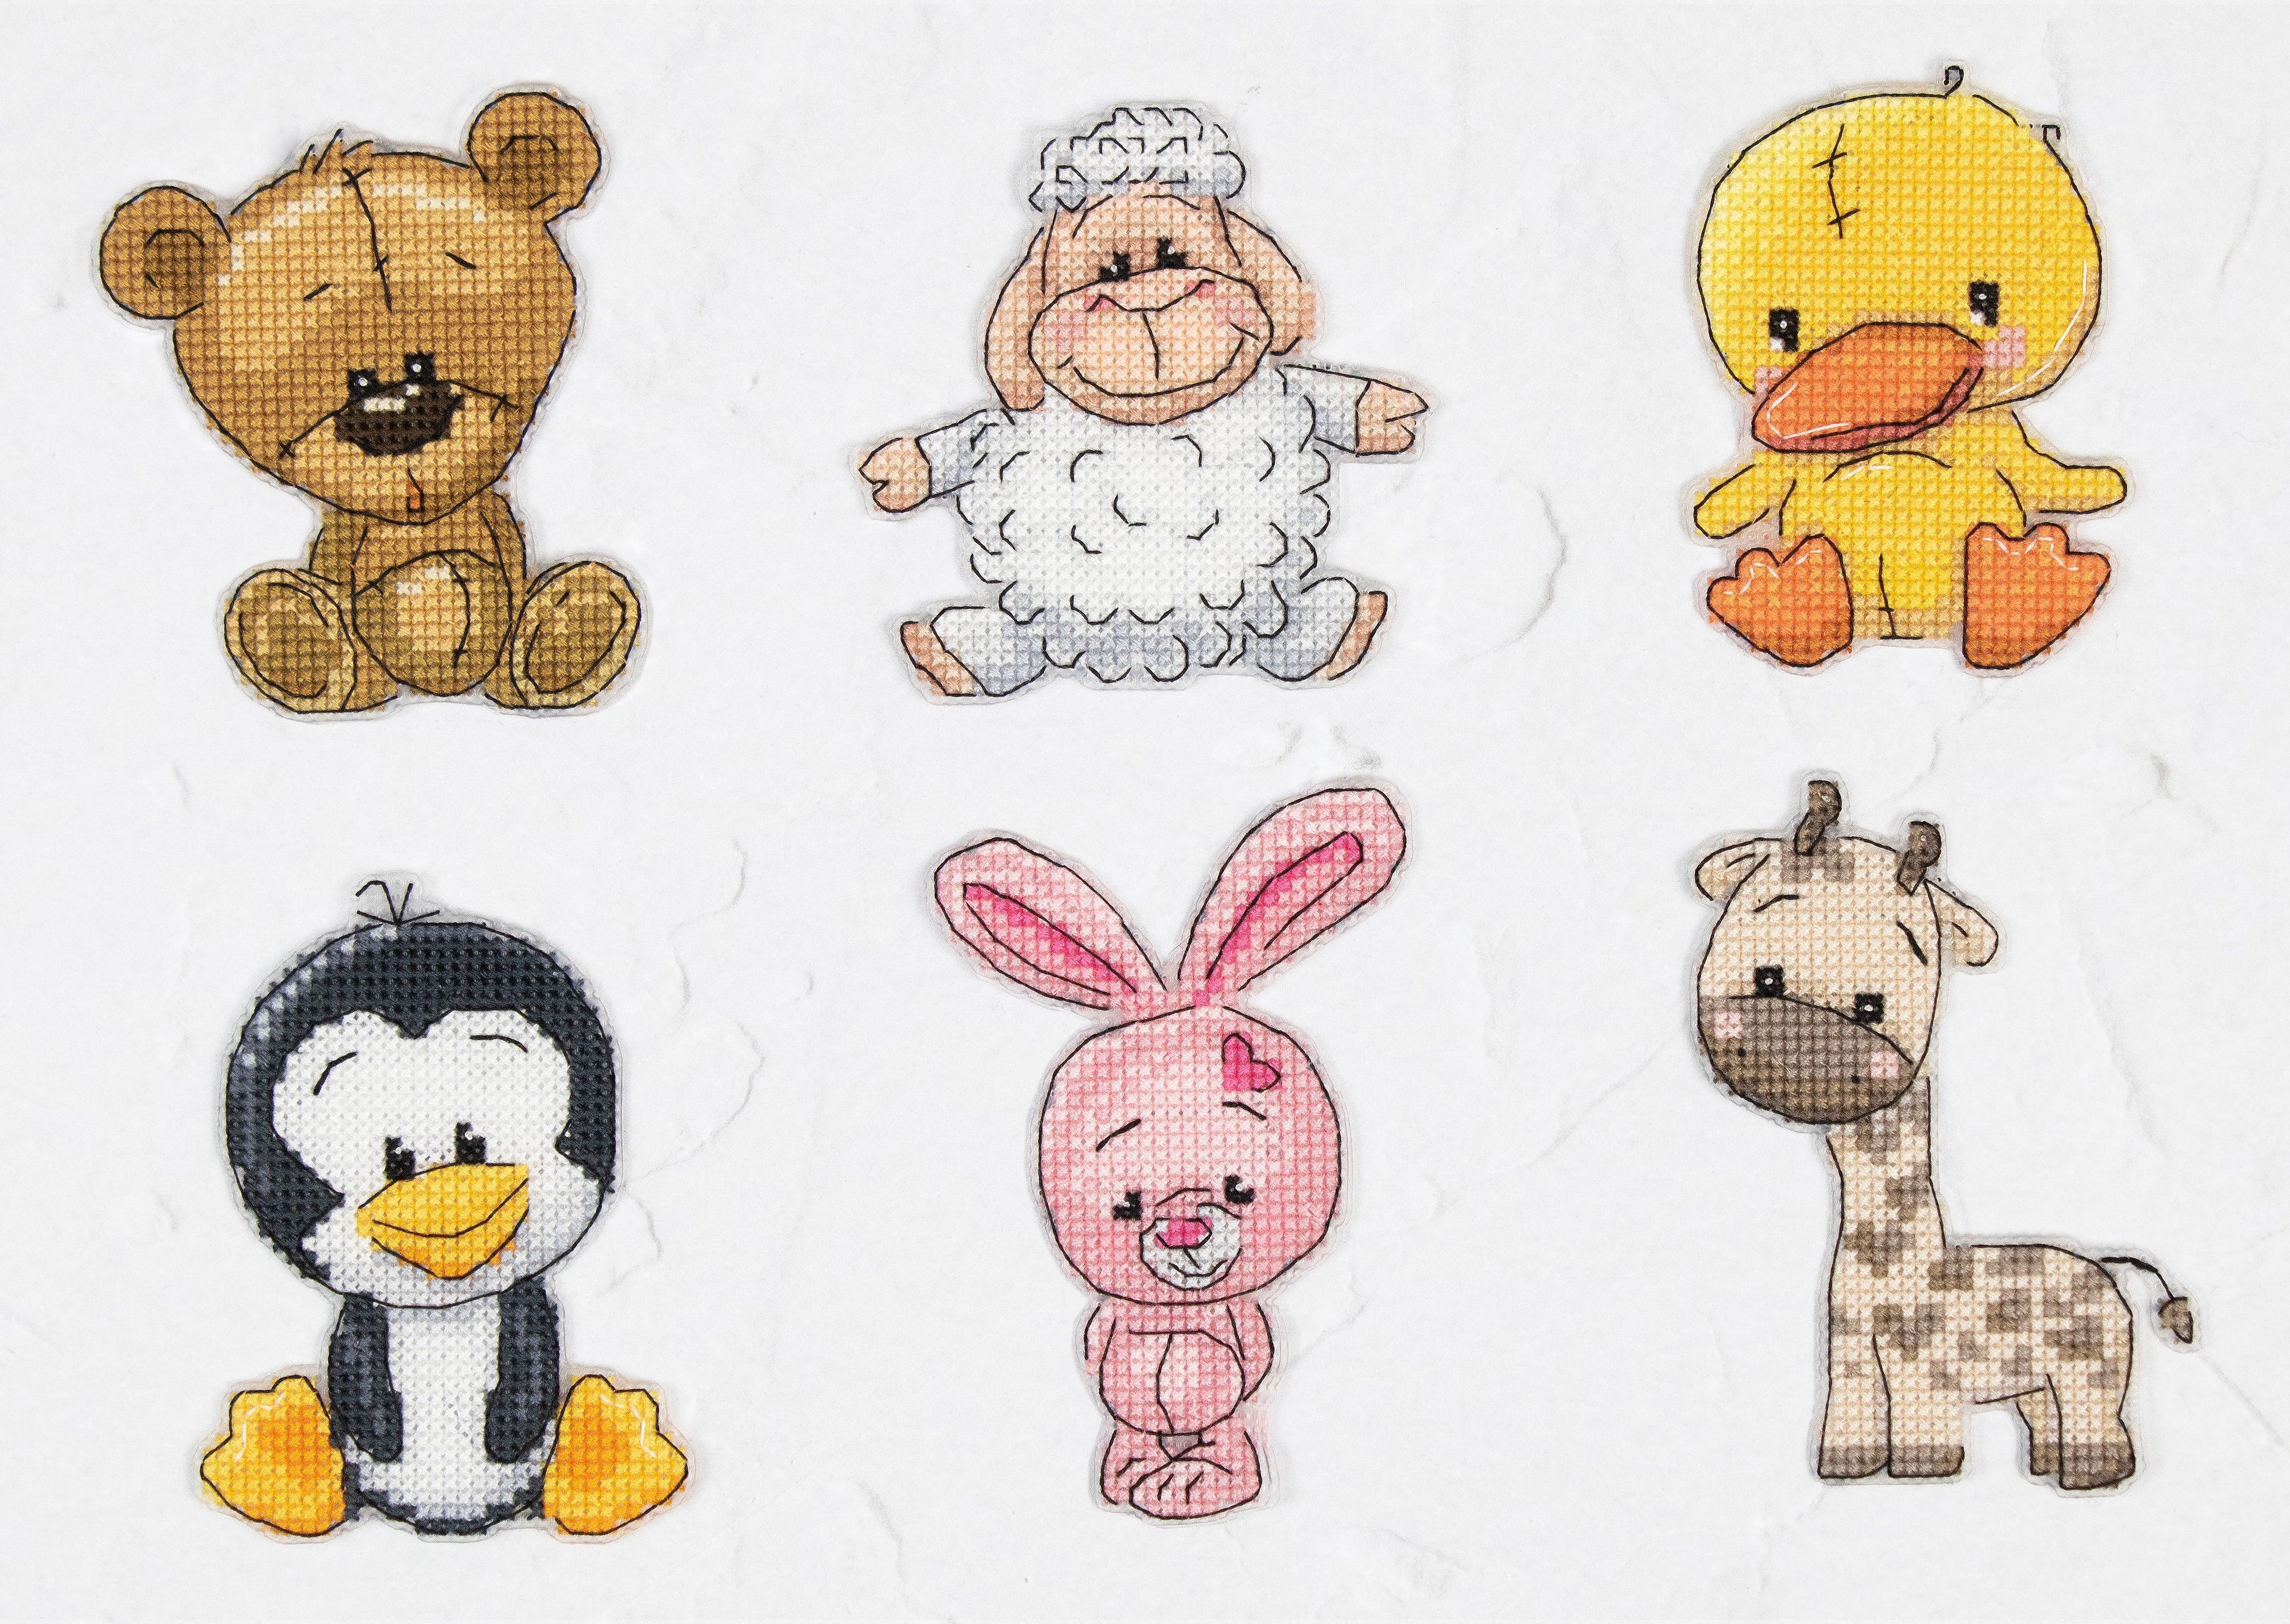 Toys Cross Stitch Kits - Friends 2, JK039 - Luca-S Cross Stitch Toys